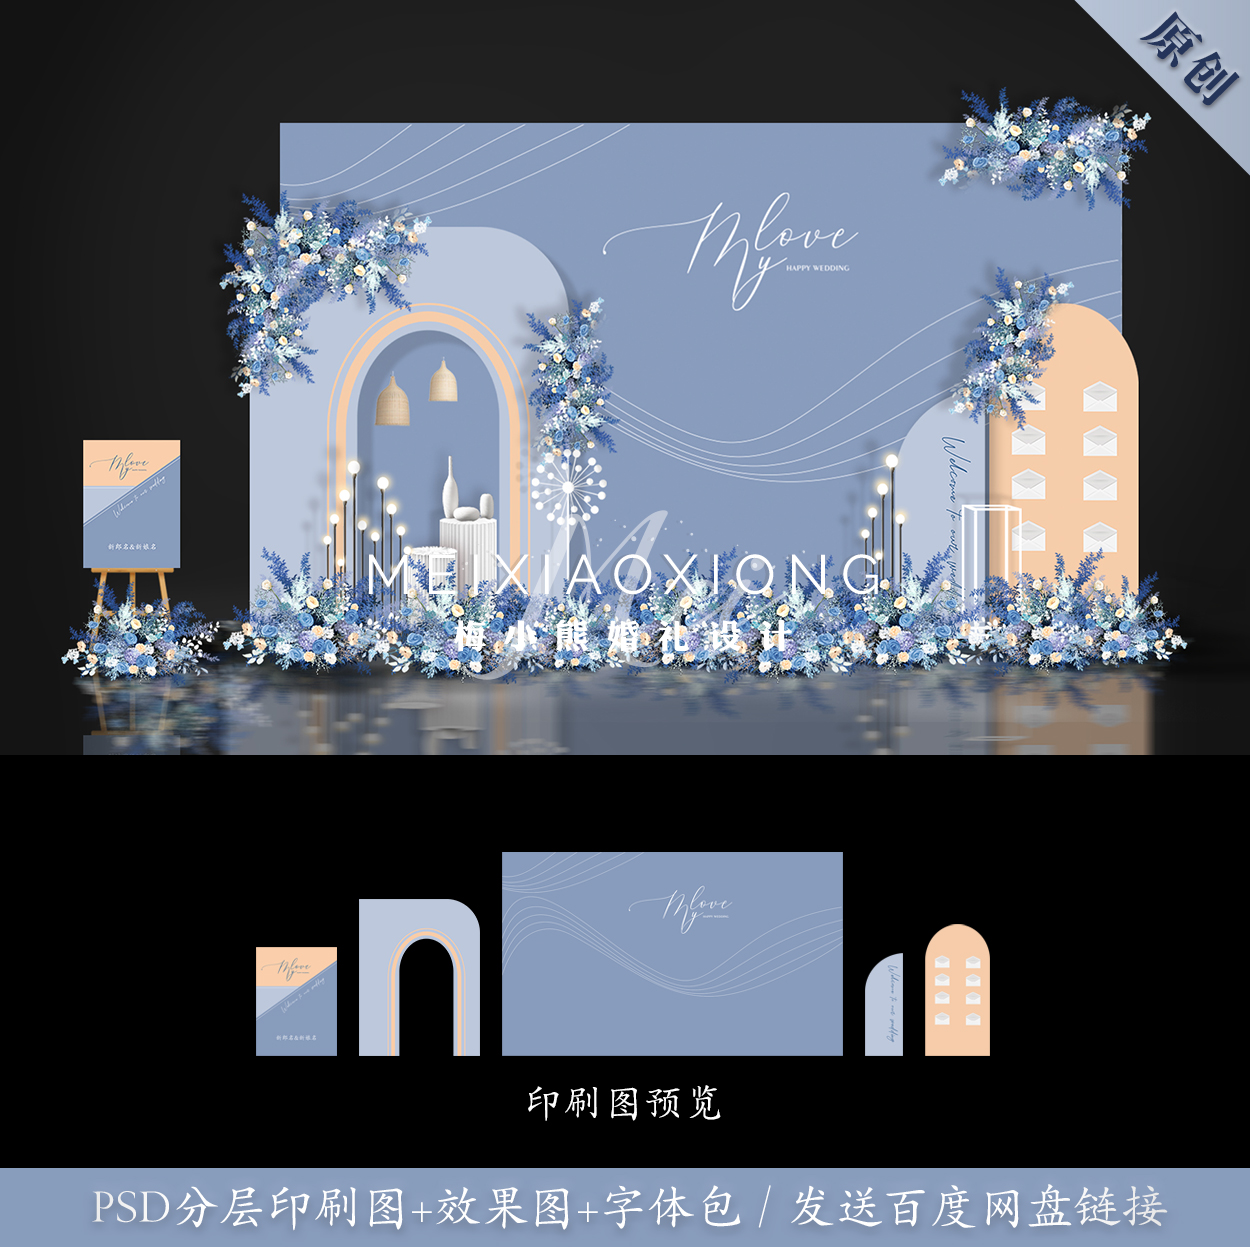 莫兰迪蓝色香槟色INS婚礼背景墙设计效果图 迎宾签到布置PSD素材